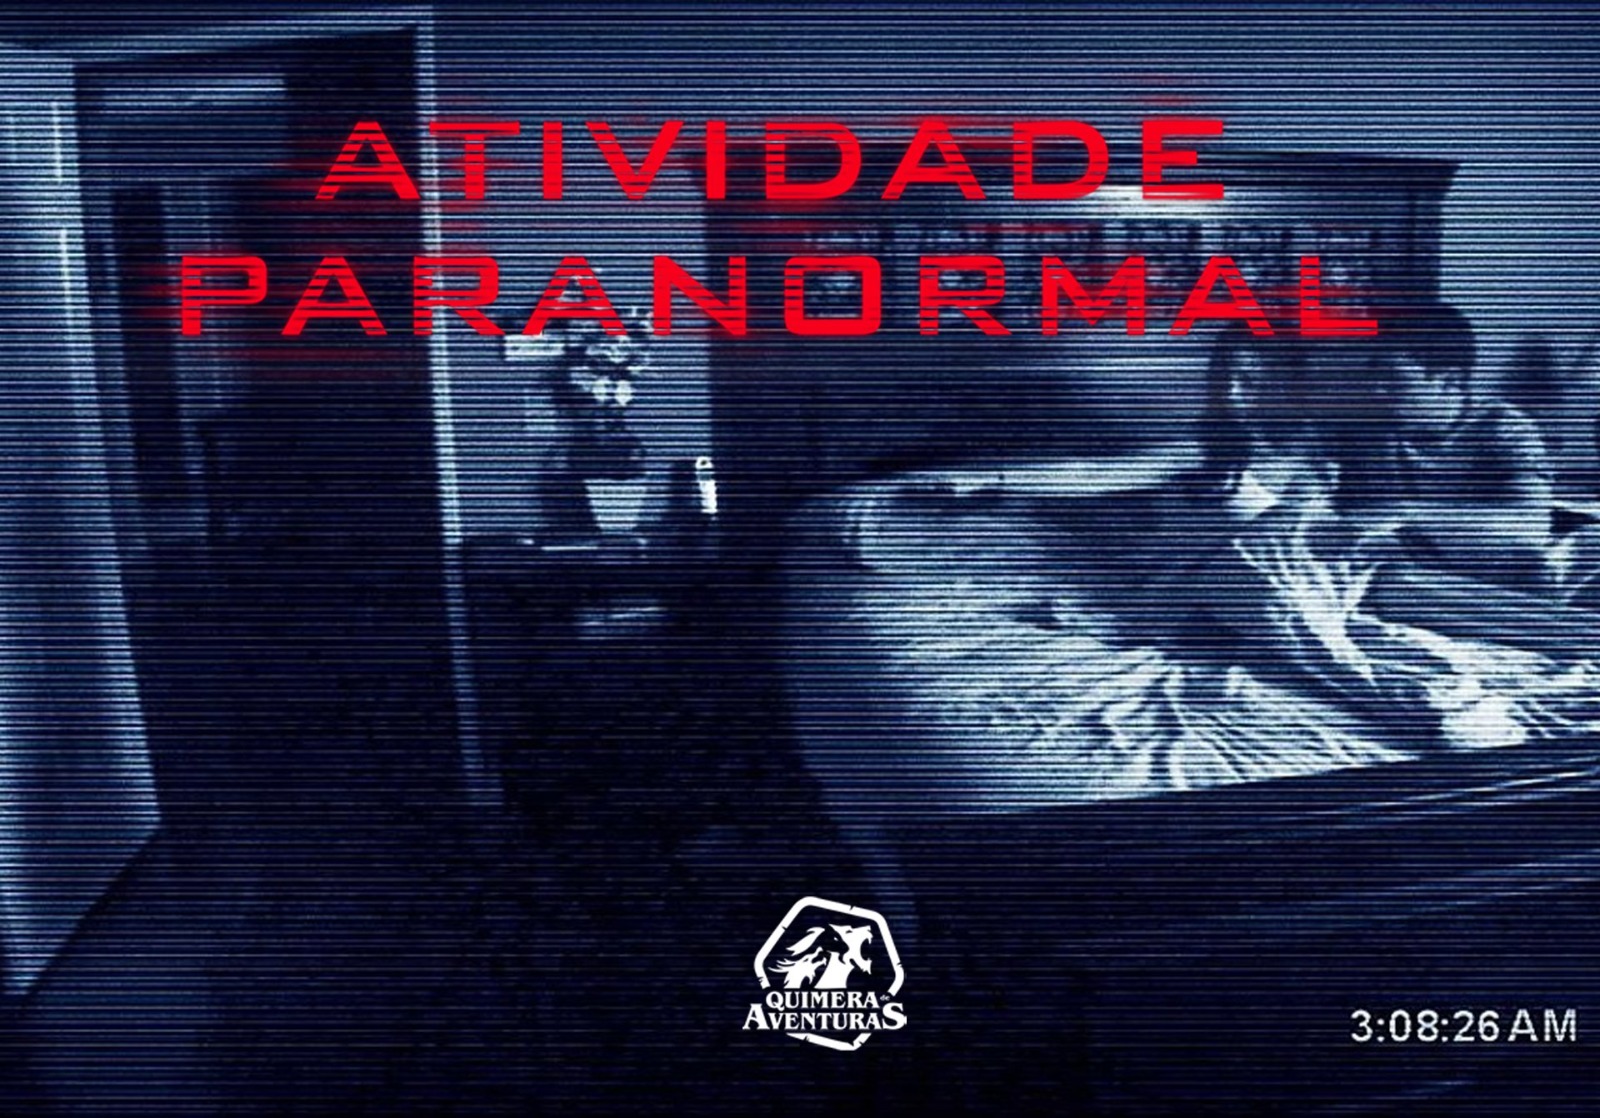 Atividade Paranormal (A Saga) – Quimera de Aventuras